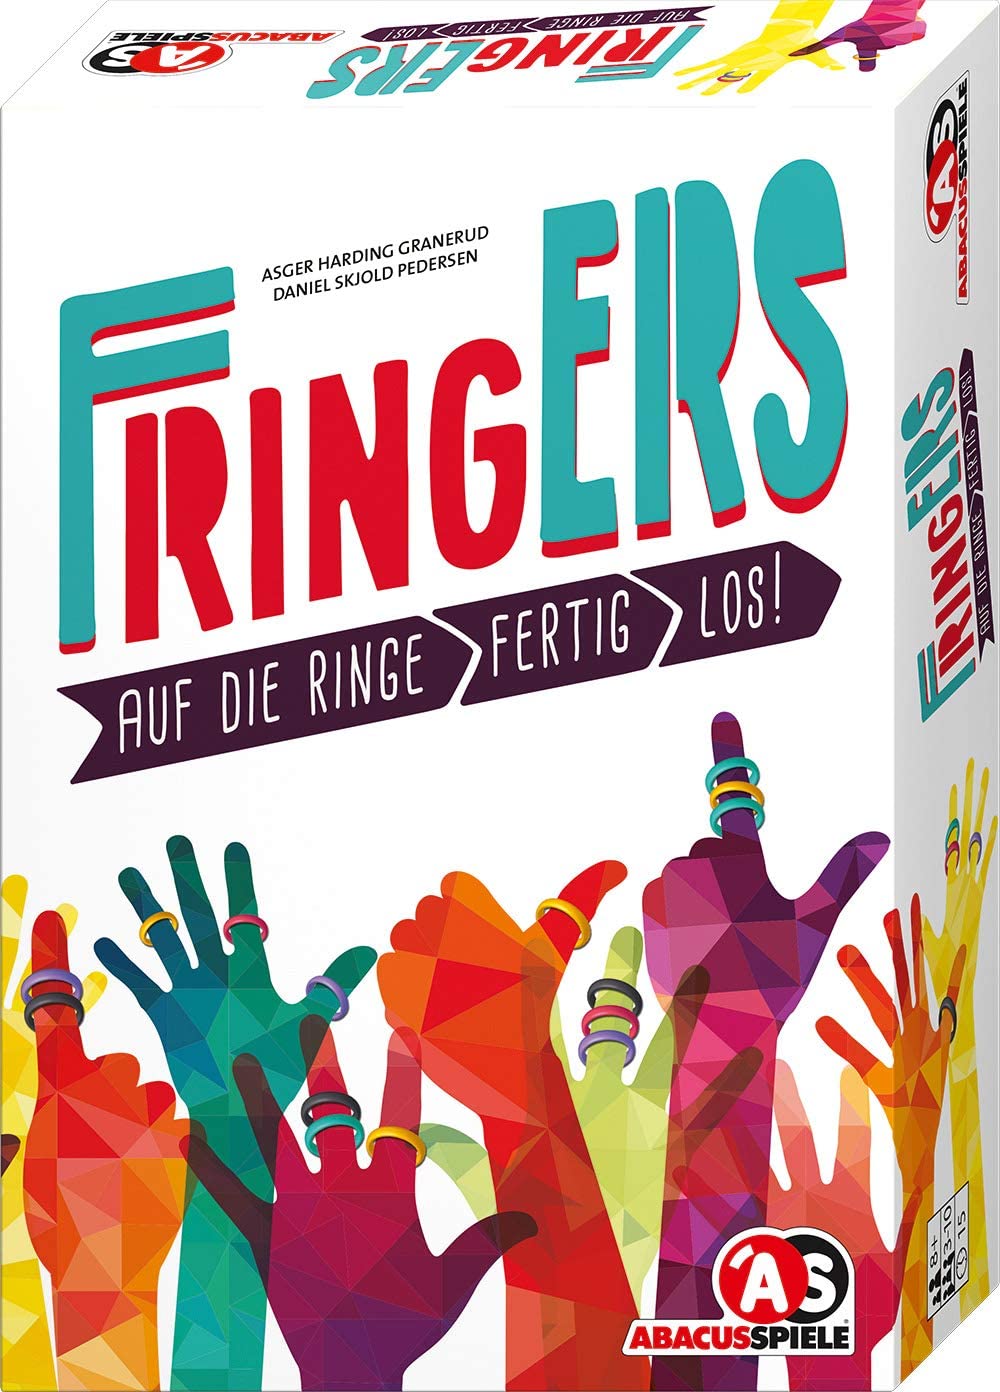 Fringers